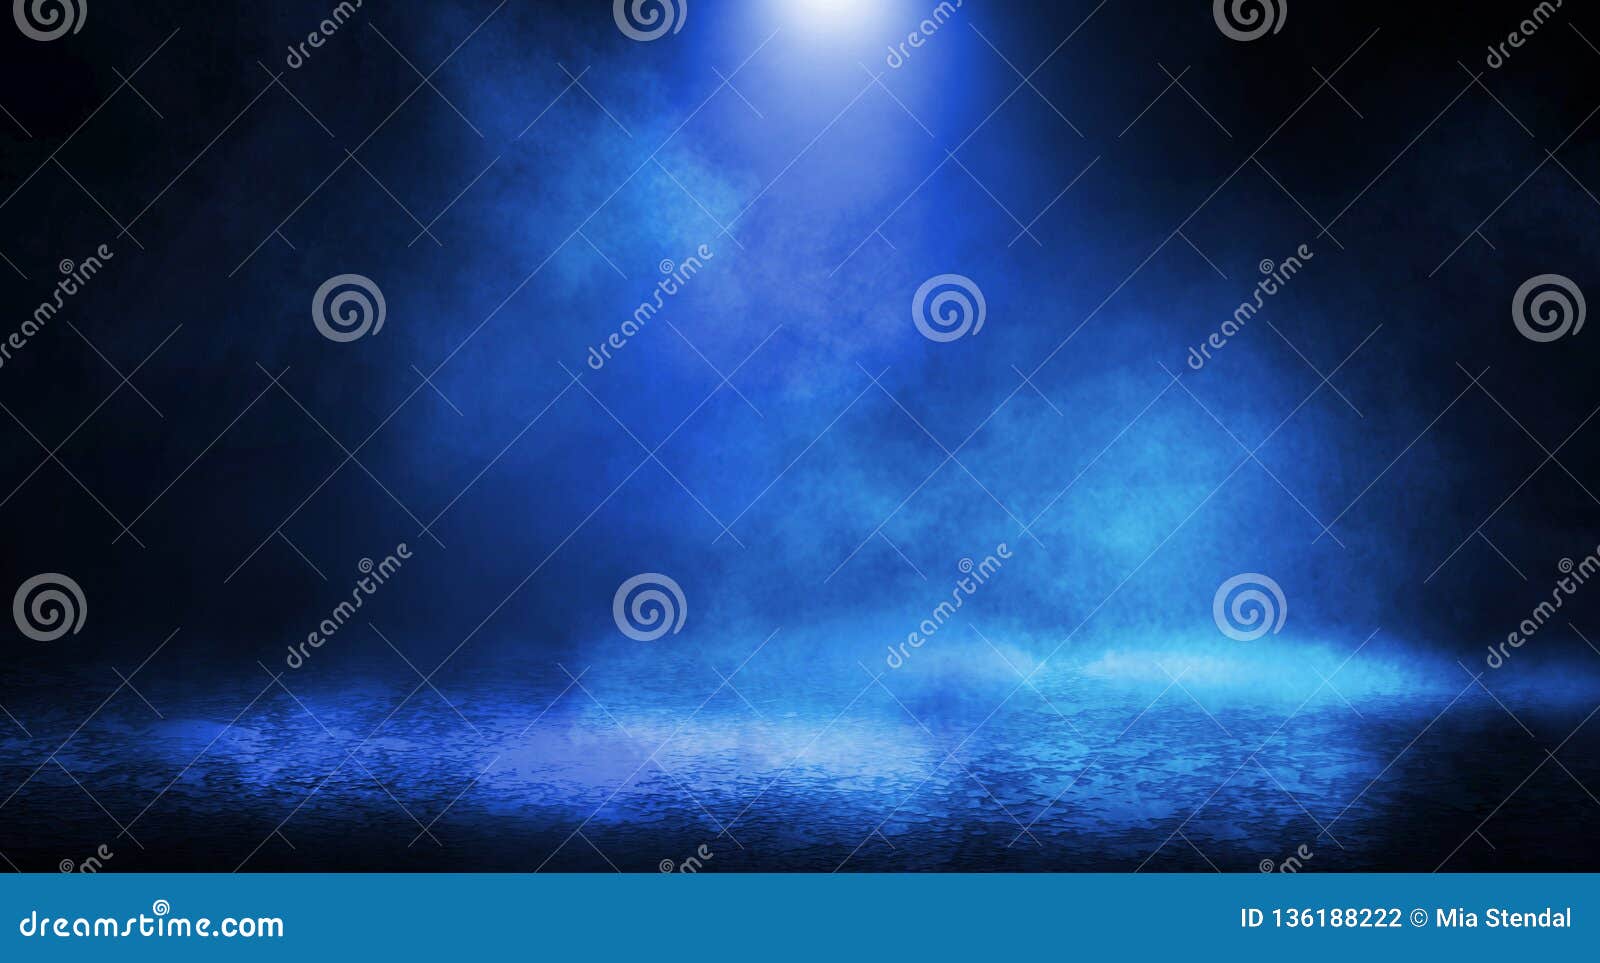 blue misty dark background.